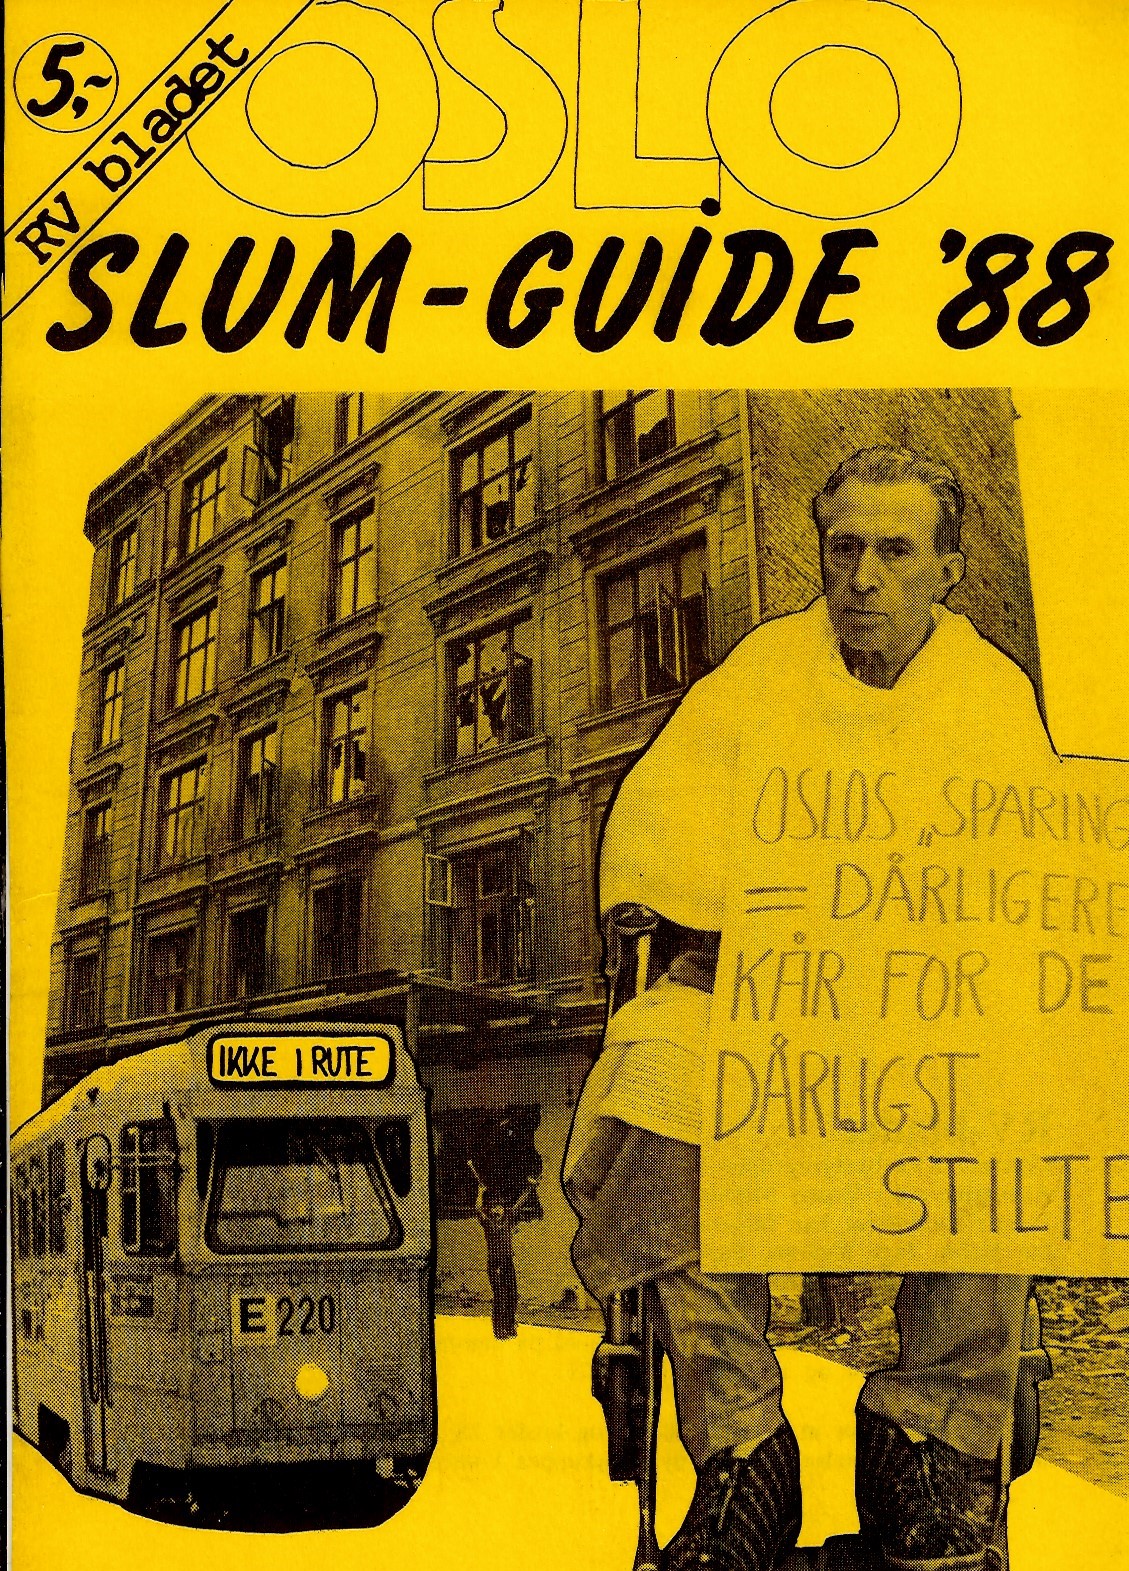 Oslo slumguide 88 